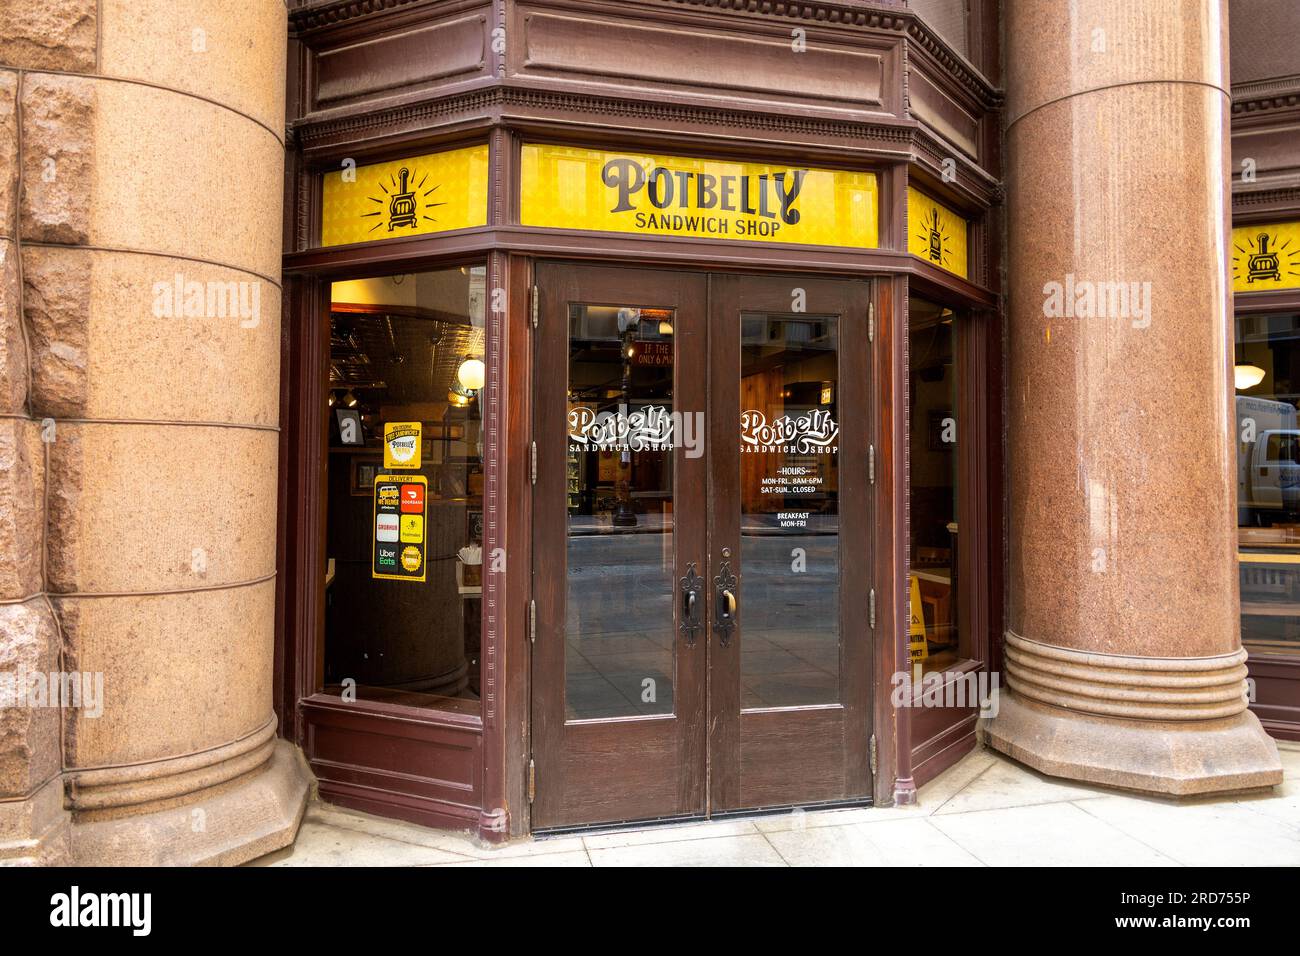 Potbelly Sandwich Shop Store Front nel centro di Chicago, USA, catena di ristoranti fast-casual americani che serve sandwich tostati al forno Foto Stock